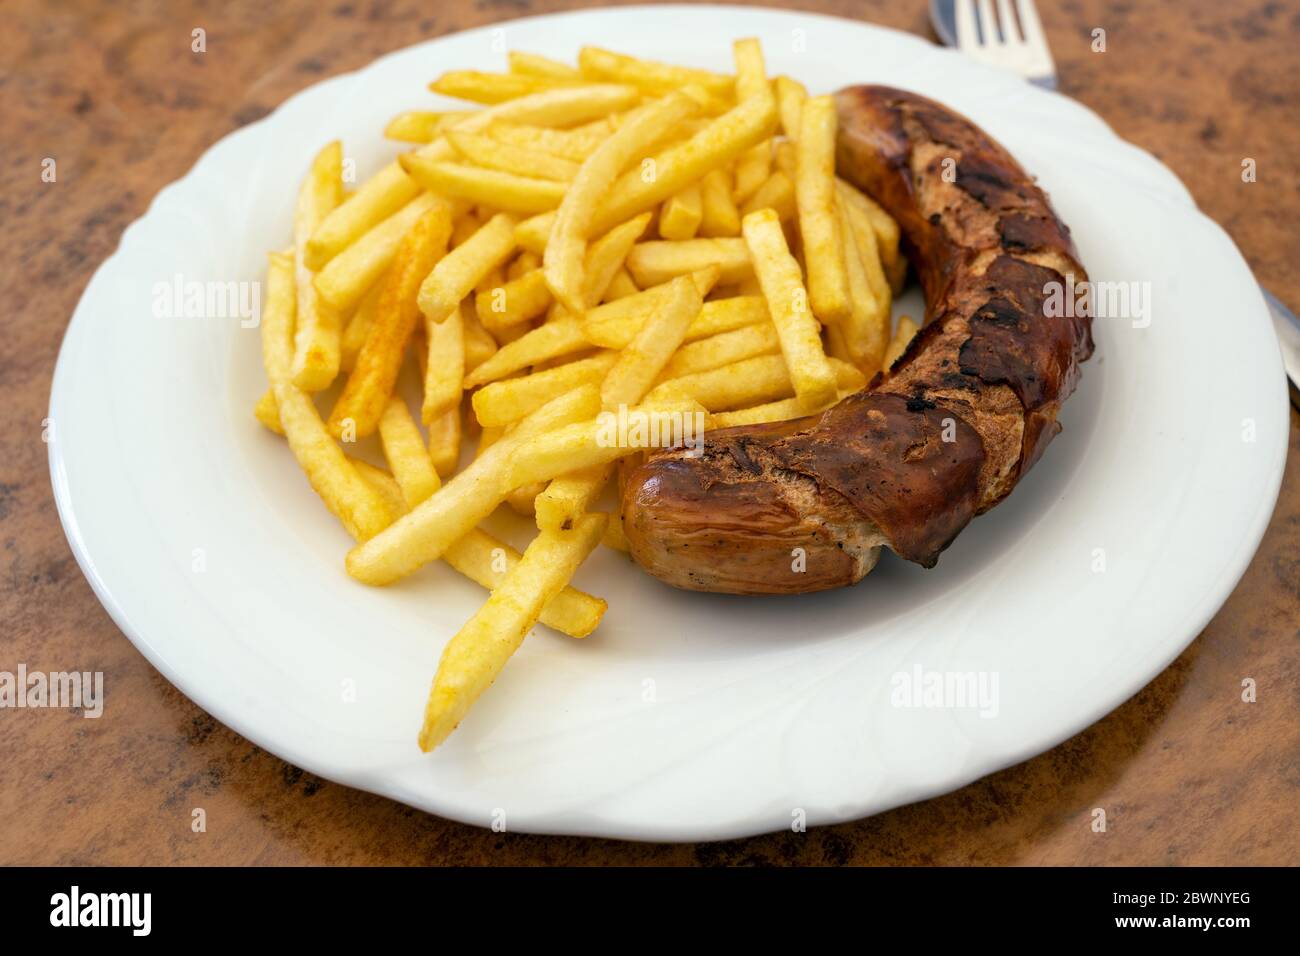 Gegrillte Wurst, deutsche Bratwurst und pommes frites auf einem Teller in einem Fast-Food-Restaurant, lecker, aber ungesund essen mit trans Fett und gesättigten Fatt Stockfoto